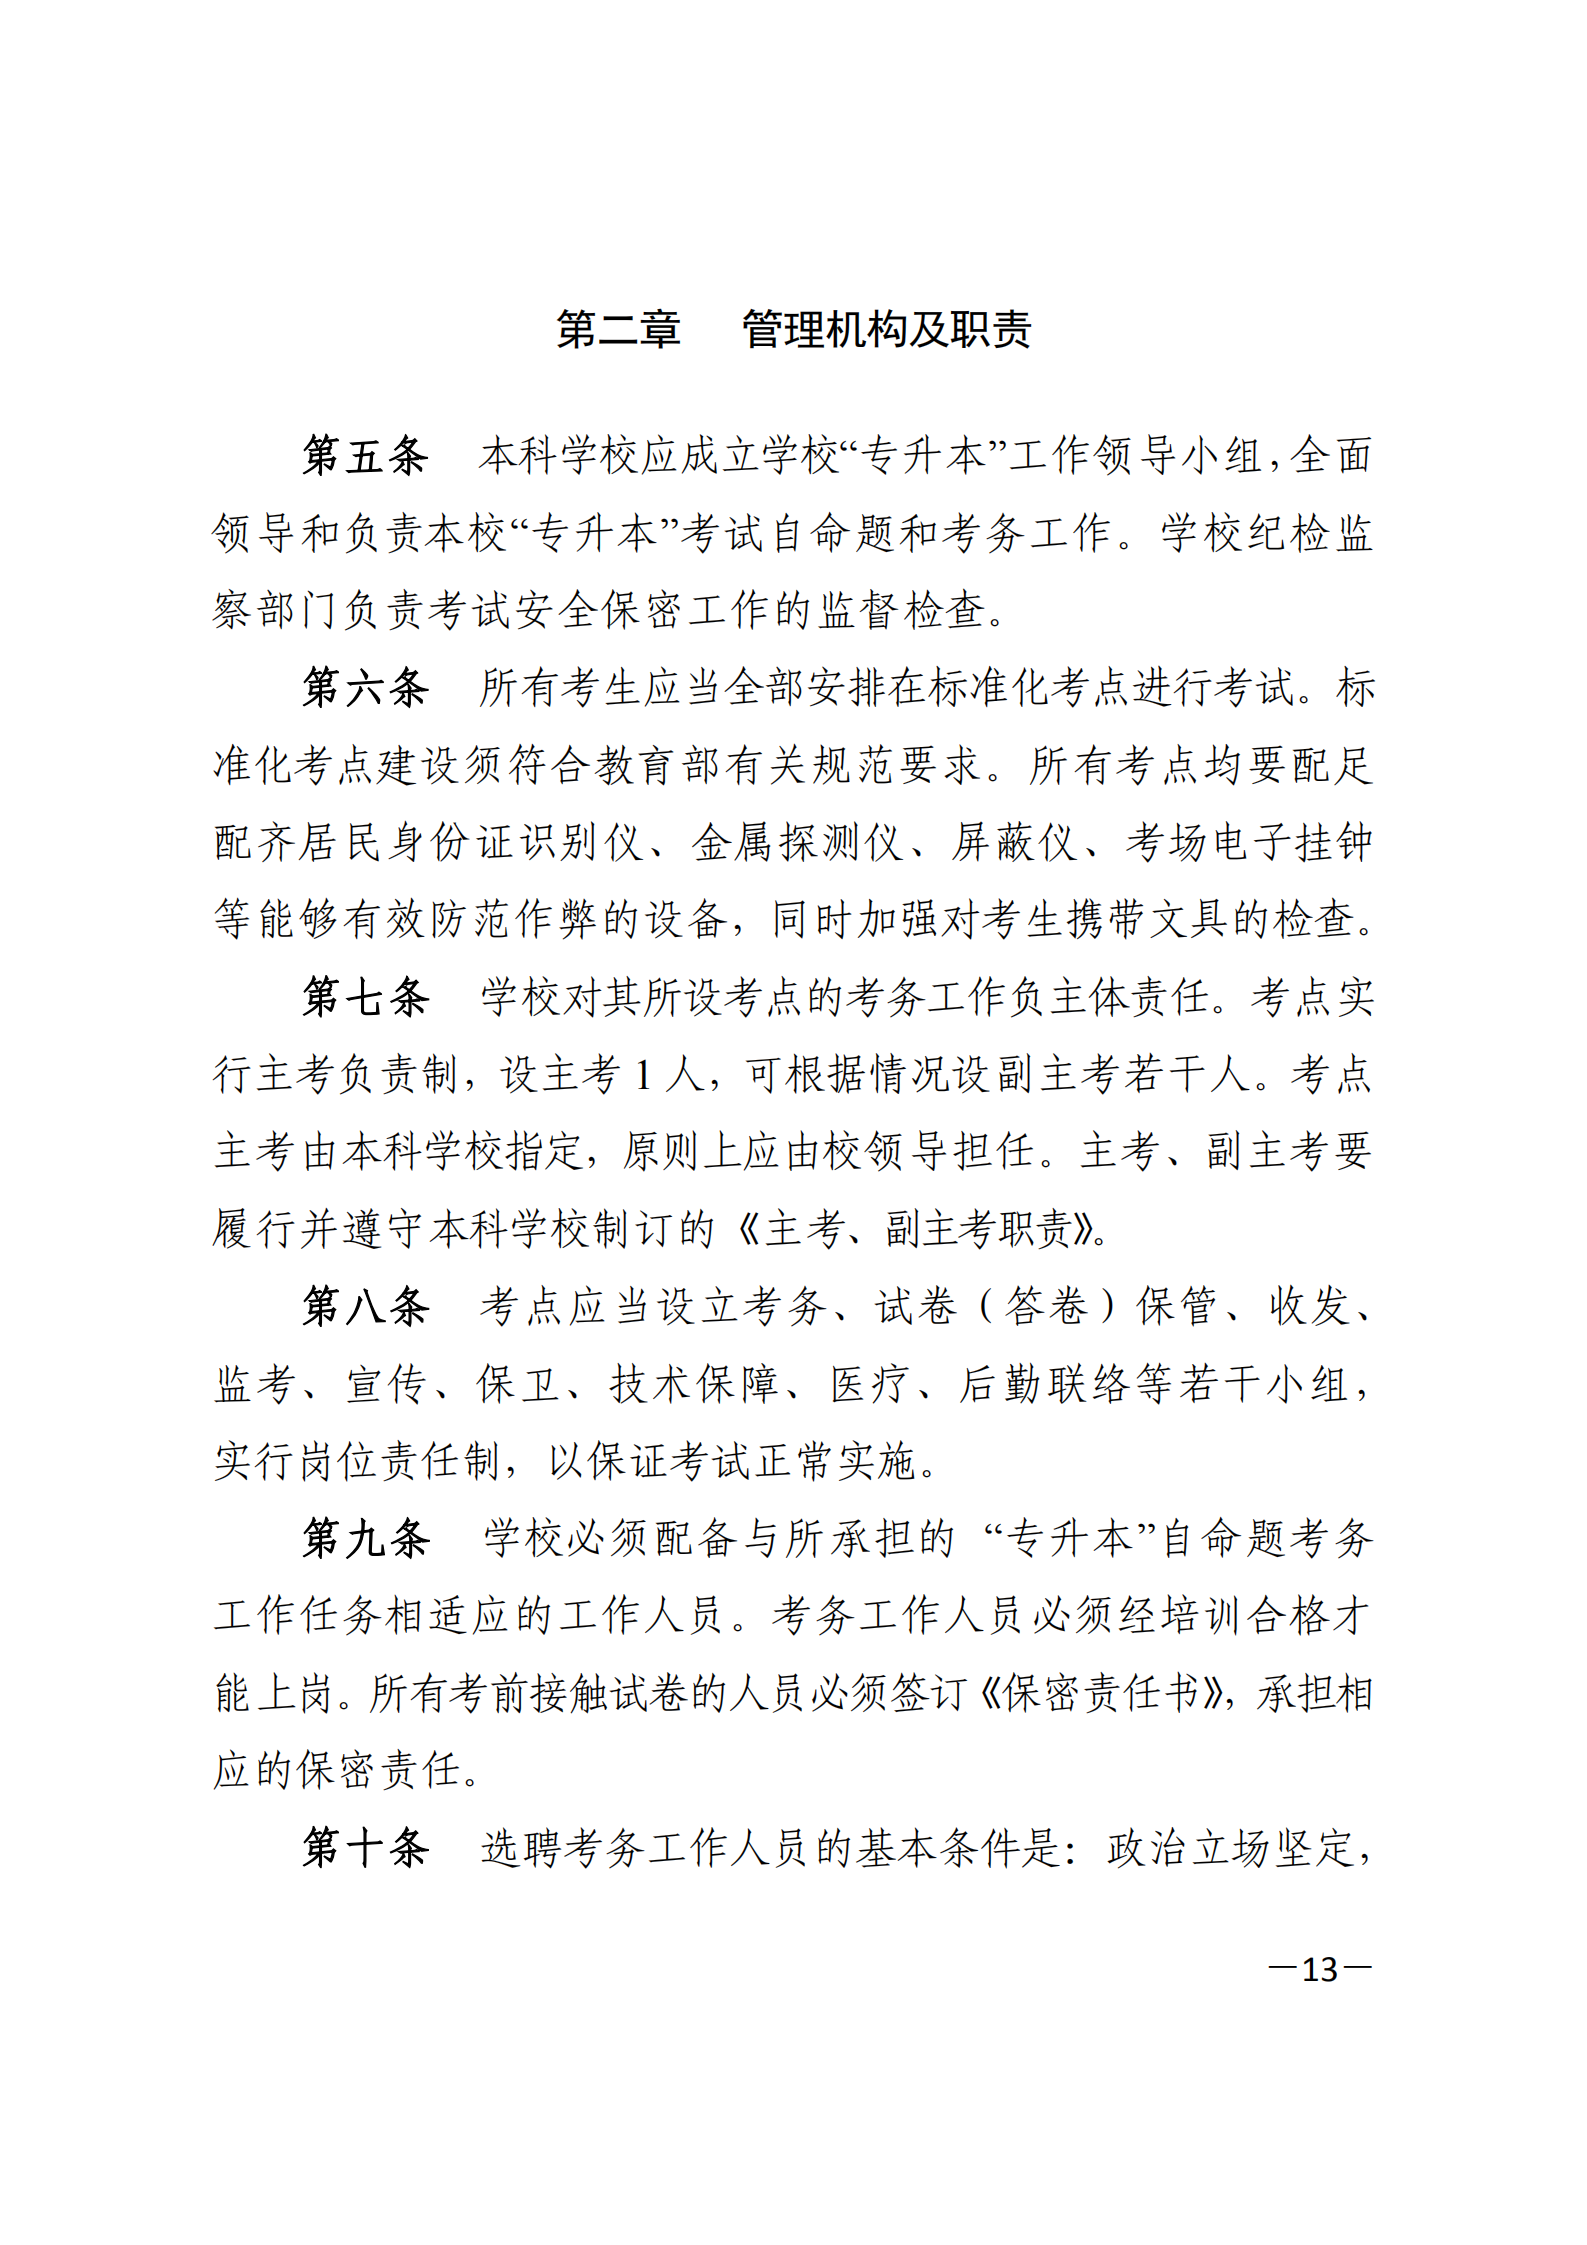 3_湘教发〔2021〕2号 关于印发《2021年湖南省普通高等教育“专升本”考试招生工作实施方案》的通知_12.png